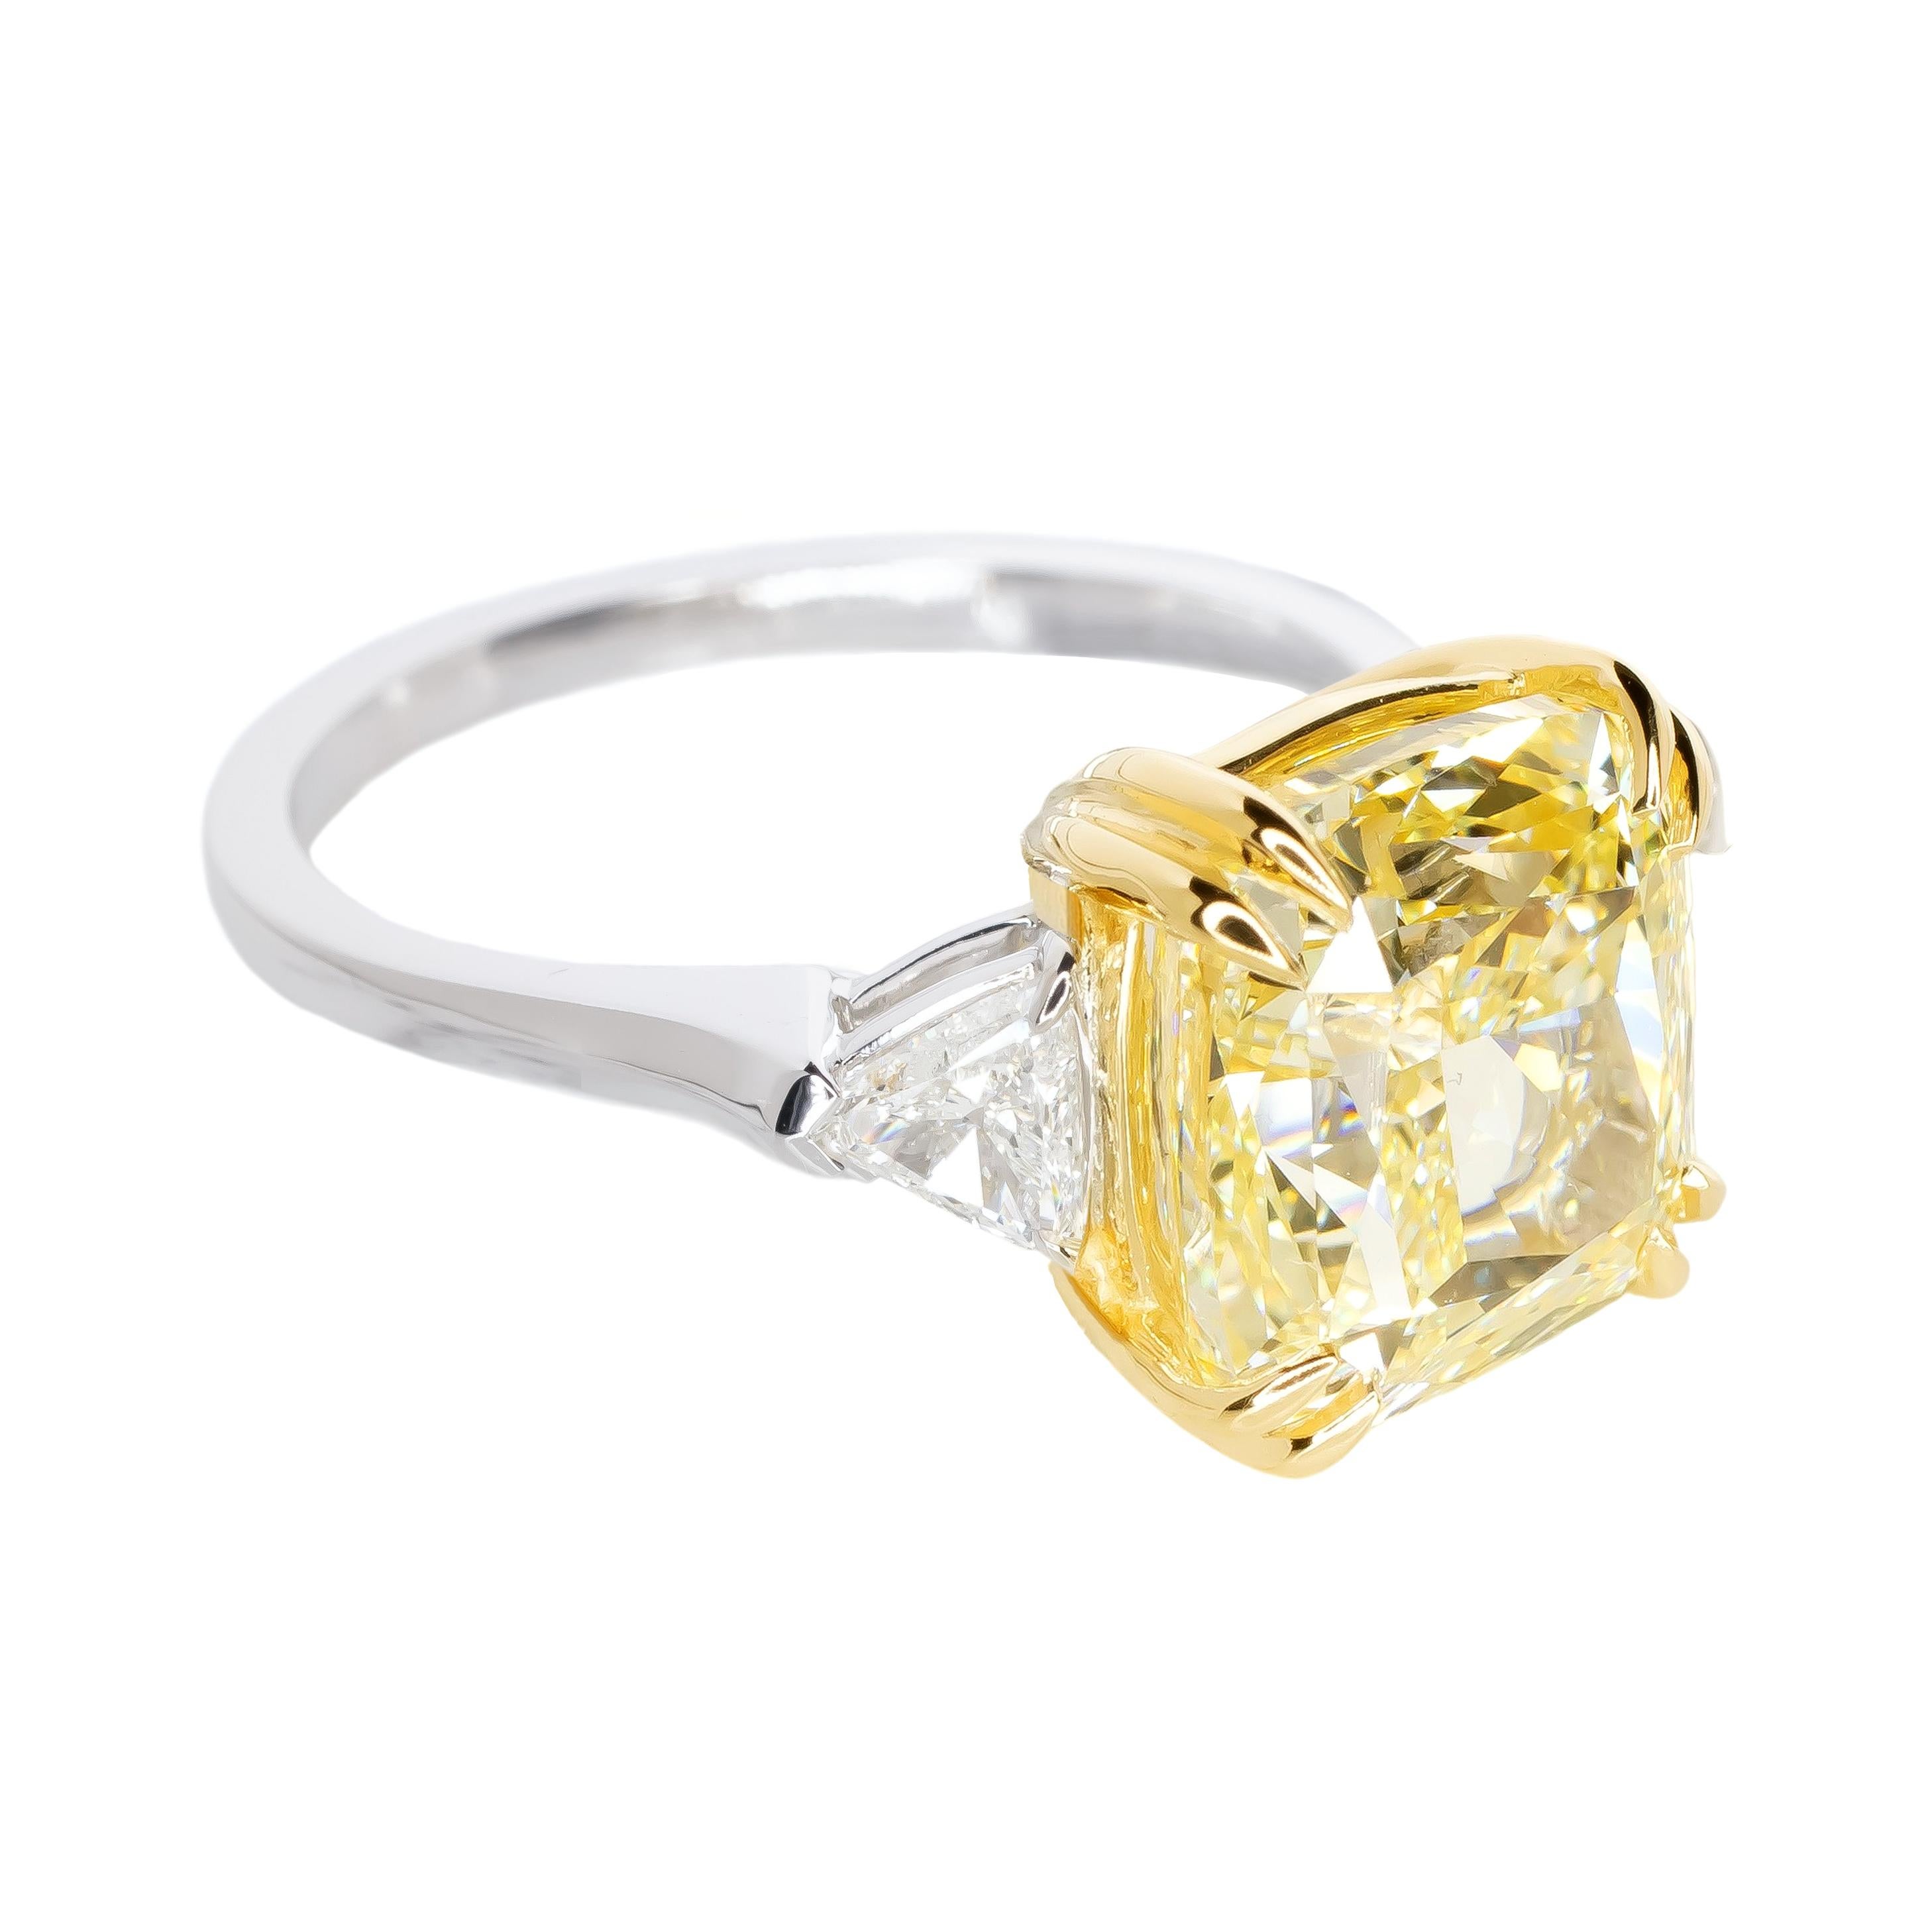 Cette superbe bague est ornée d'un magnifique diamant de taille coussin de 4 carats de couleur Trueing Light Yellow, véritable incarnation de l'élégance et de la sophistication. Le diamant, certifié par le GIA avec une pureté sans défaut interne,